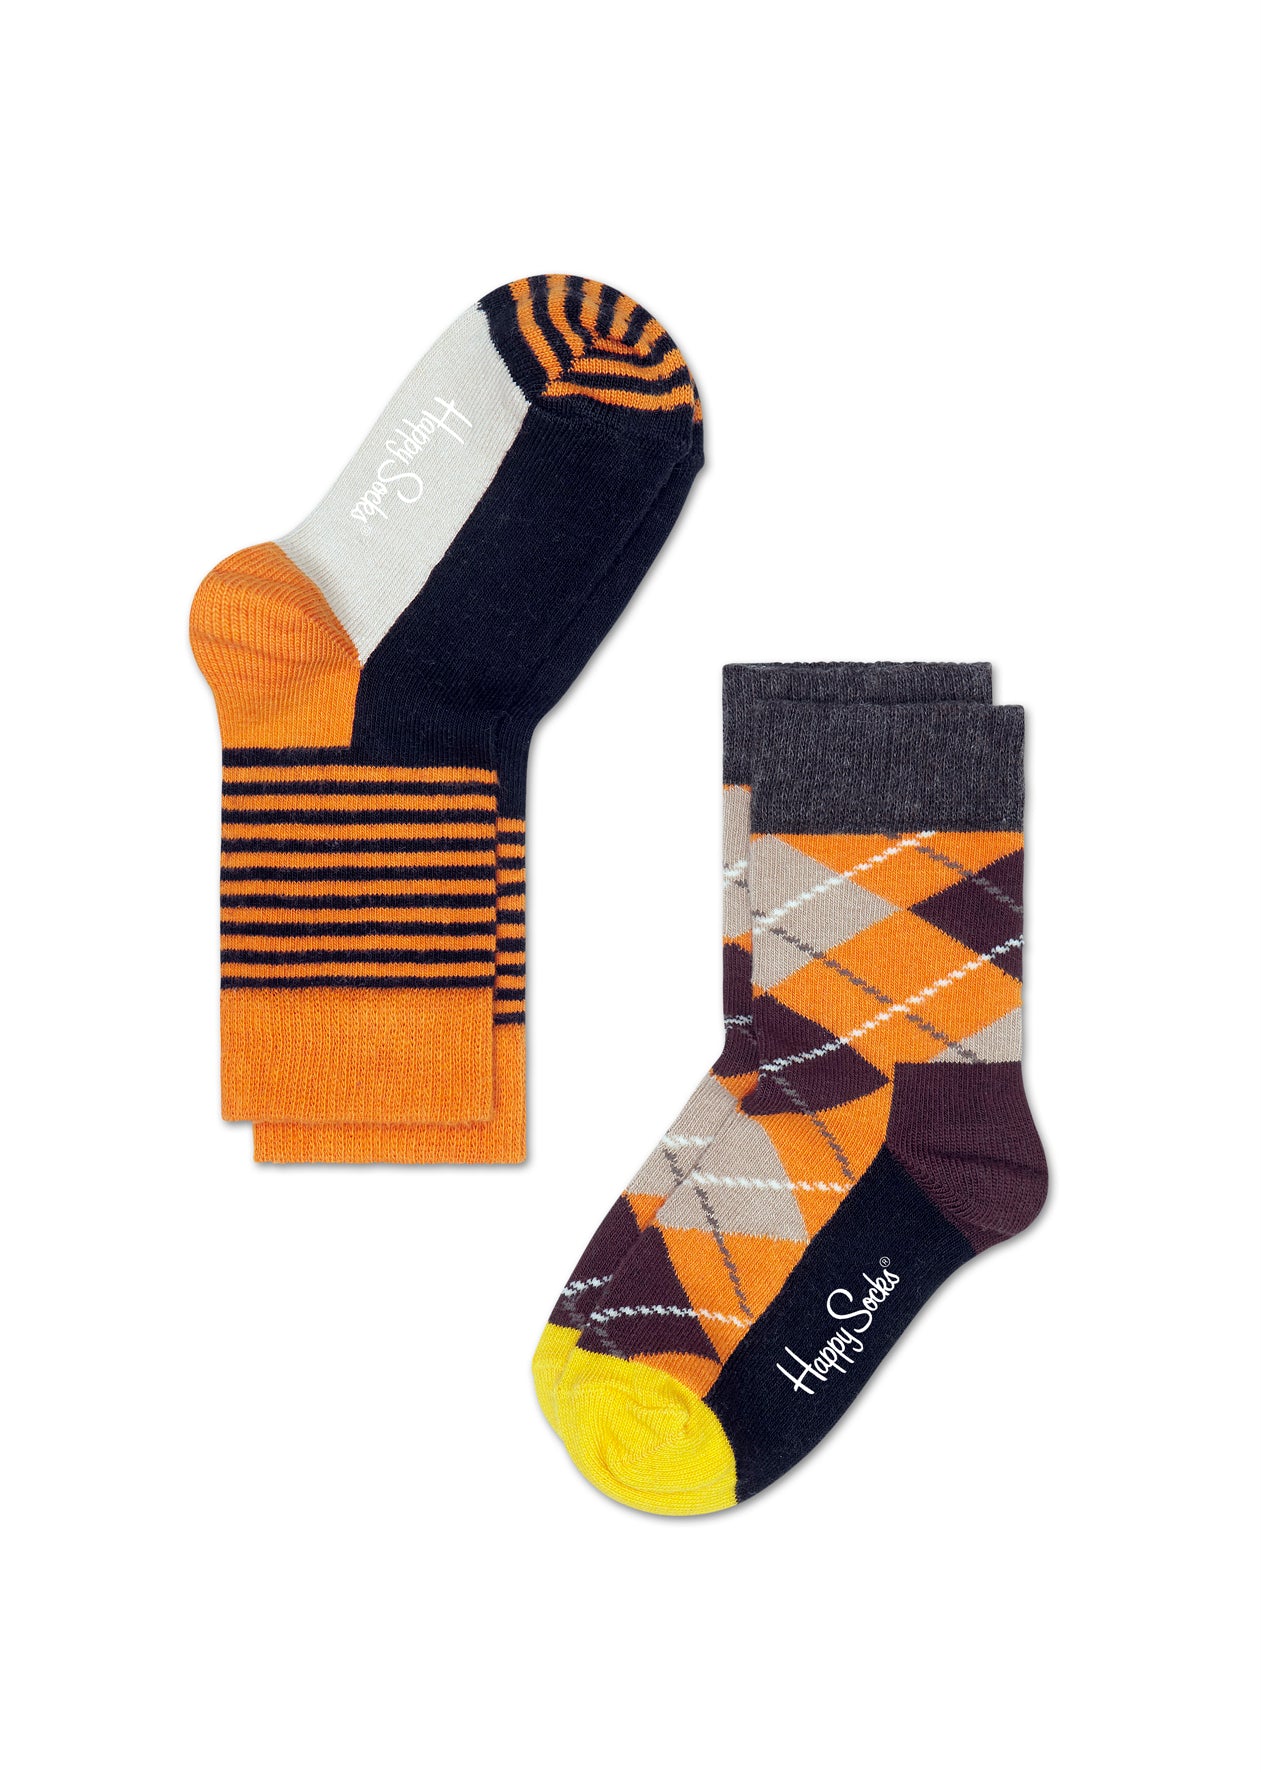 Dětské barevné ponožky Happy Socks, dva páry - proužky a káry